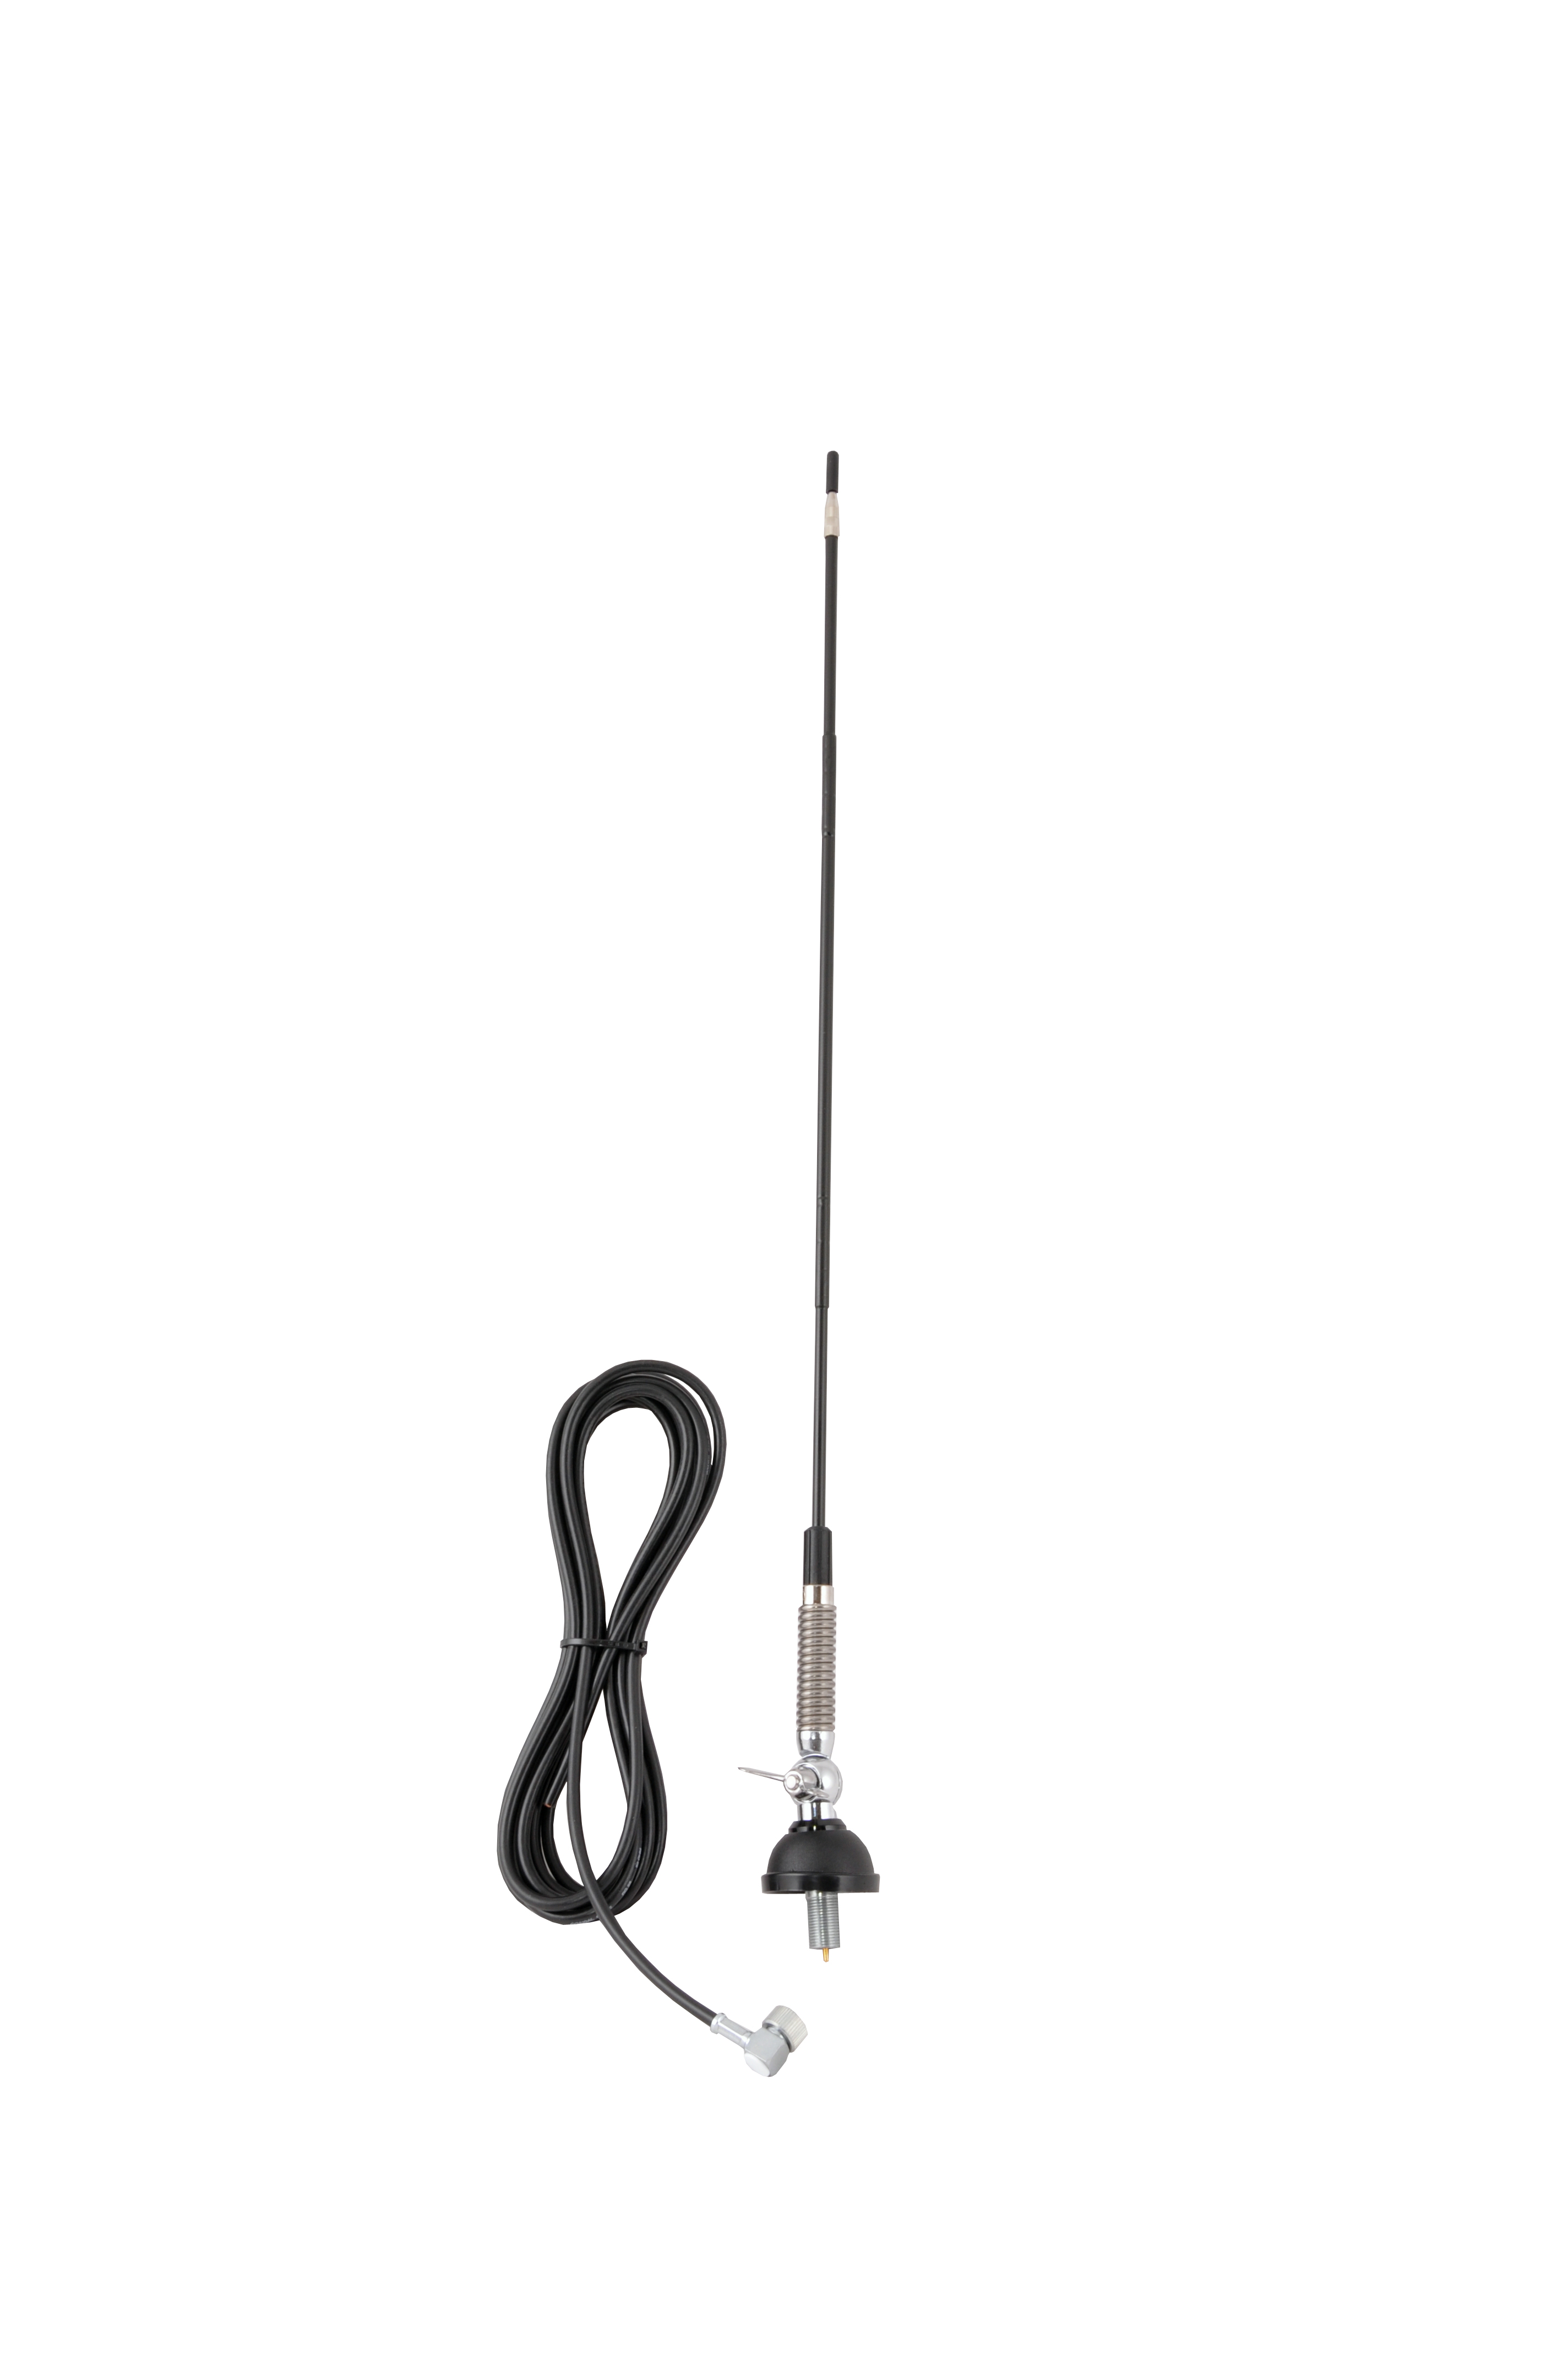 Antene și suporturi de fixare pentru antene - Antenă pentru stații radio CB Albrecht T-27 Komplett 60 cm, cu cablu 4 m, fomcoshop.ro